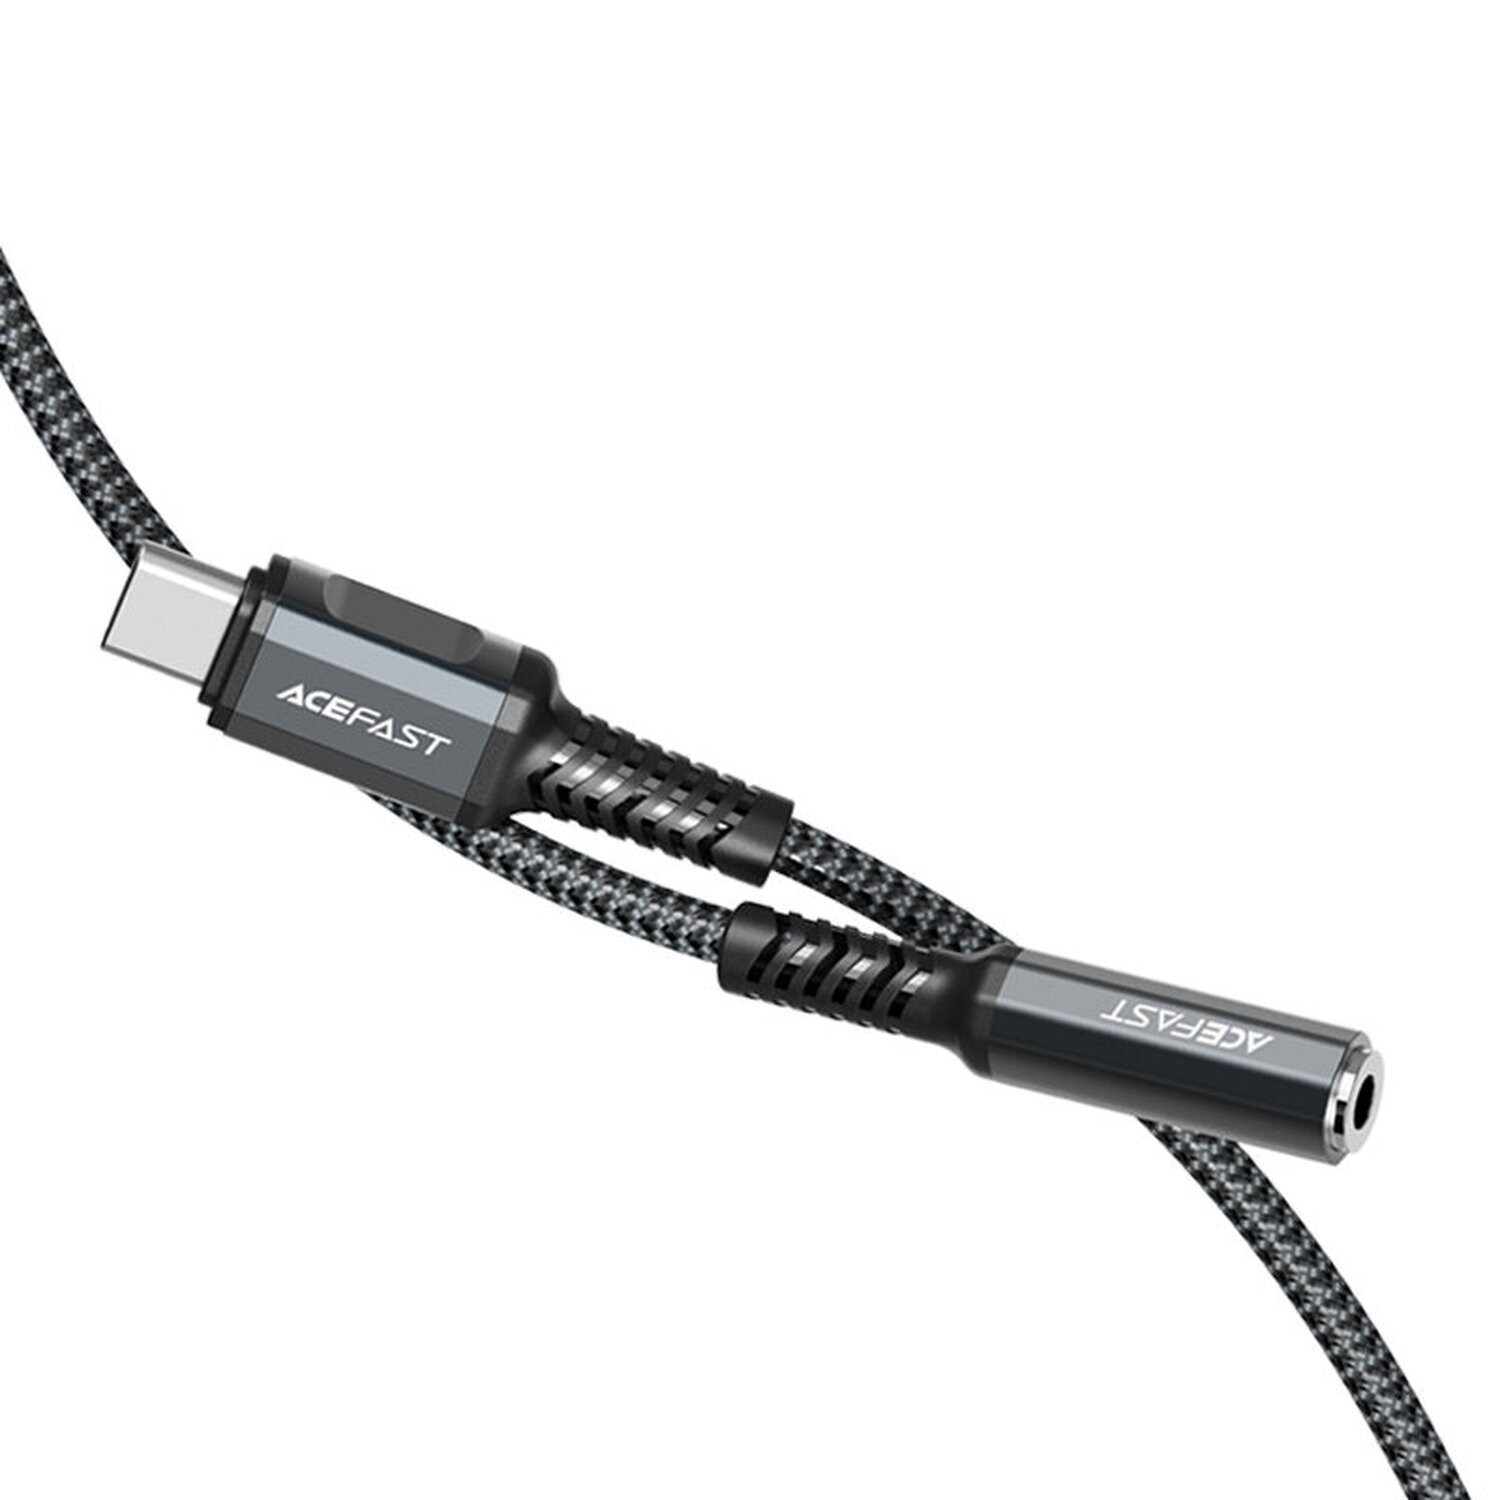 COFI USB-Typ-C Audiokabel